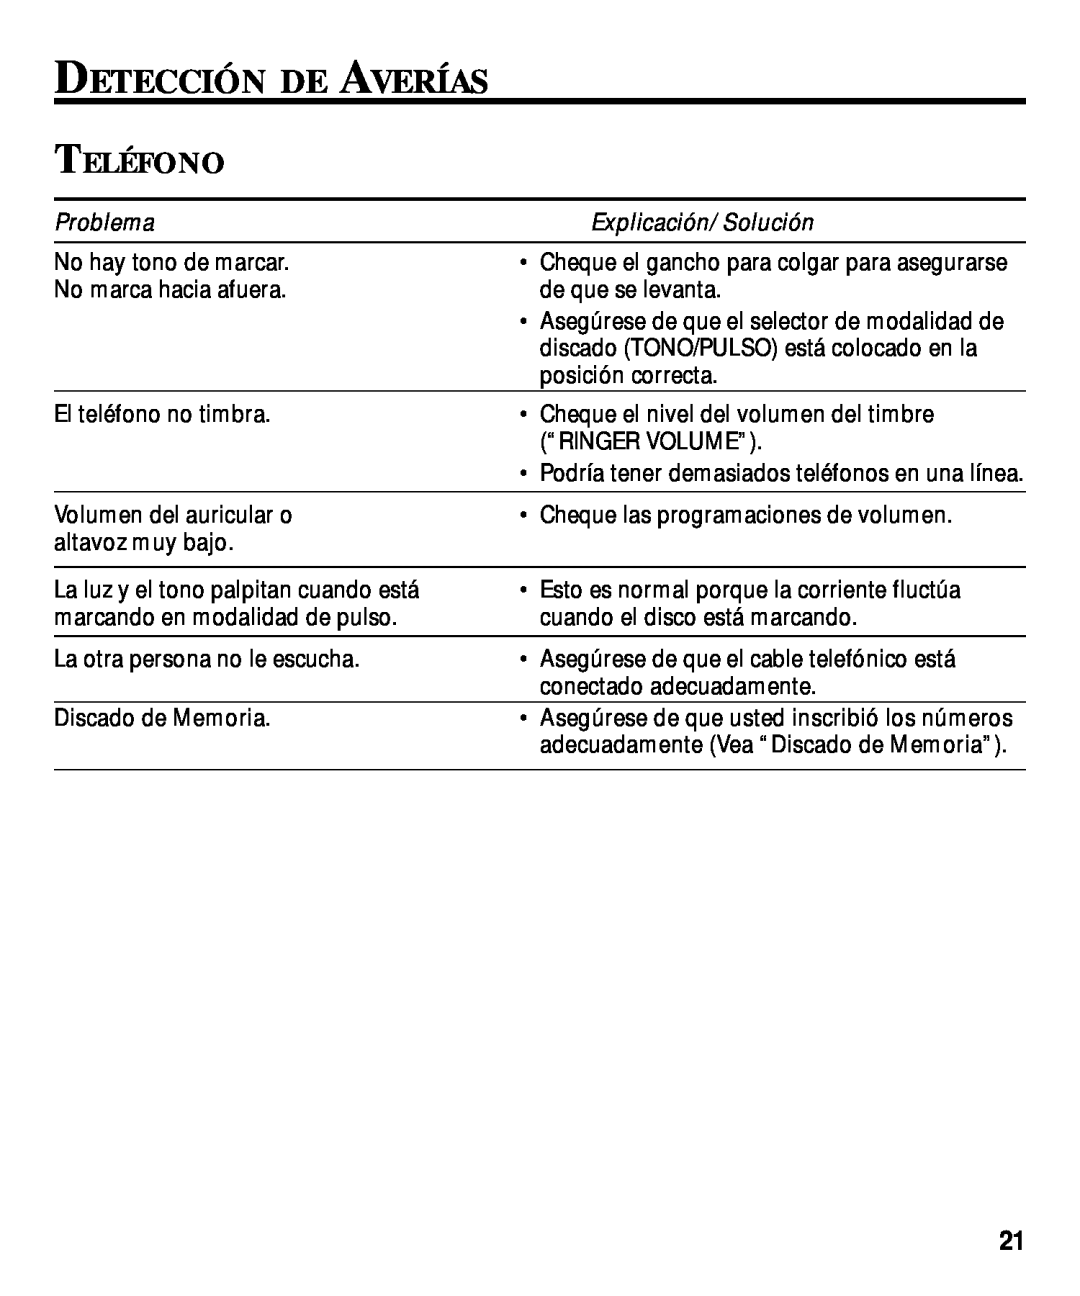 Technicolor - Thomson 29870 Series manual Detección De Averías, Teléfono, Problema 